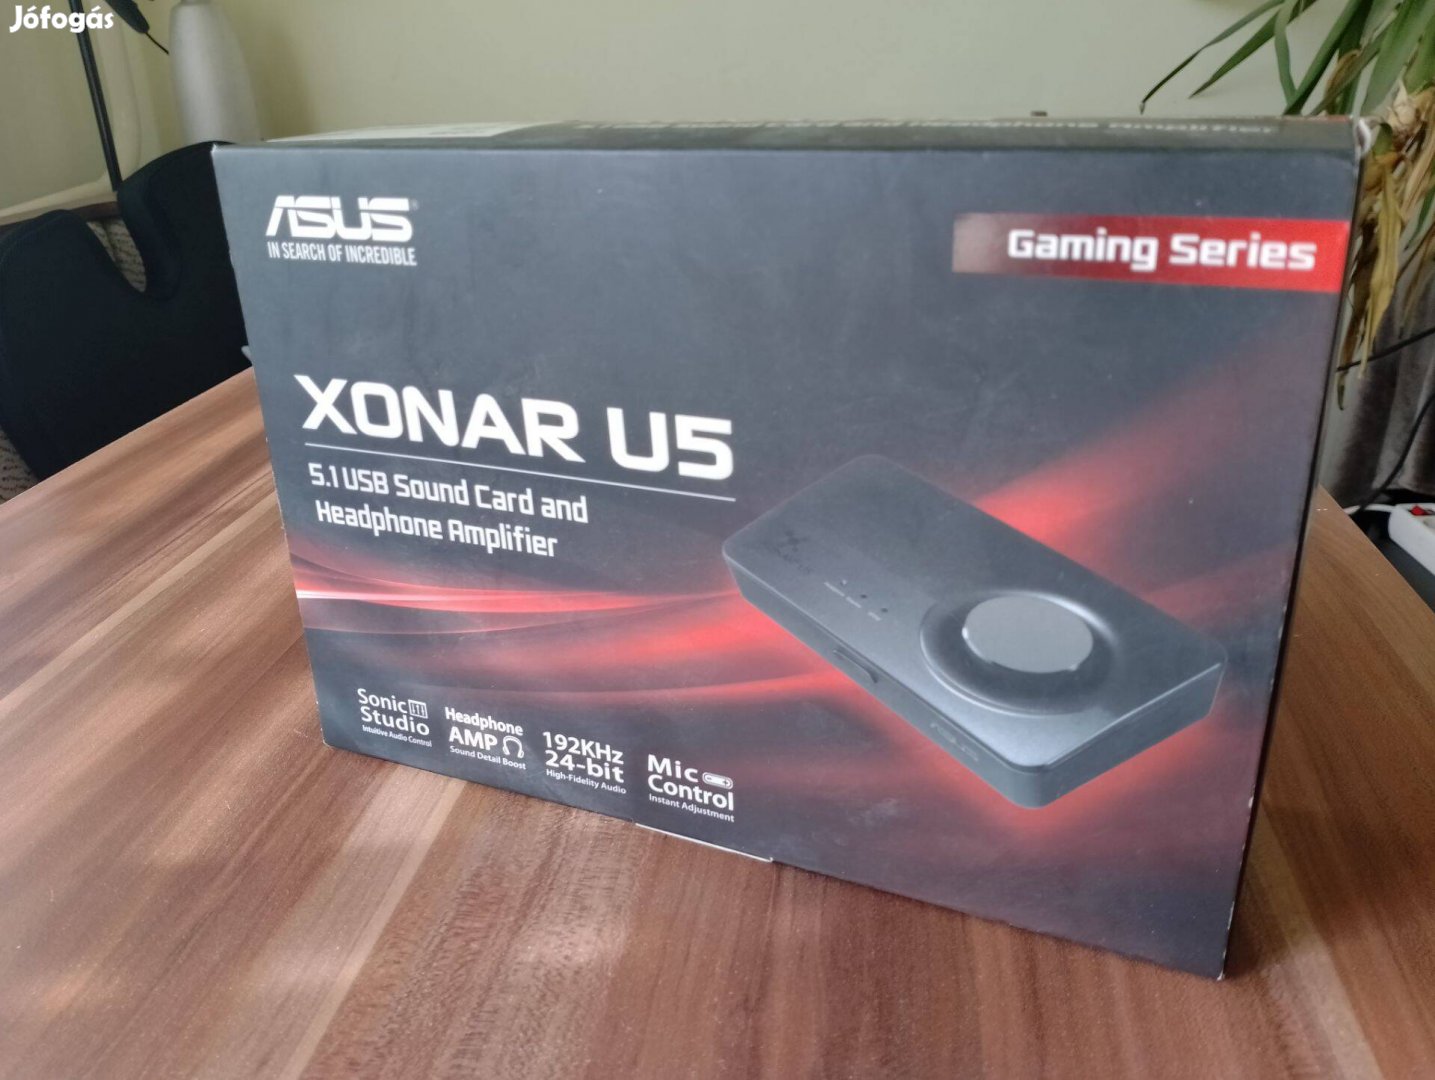 Asus Xonar U5 Kompakt, 5.1 csatornás USB hangkártya és fejhallgató-erő